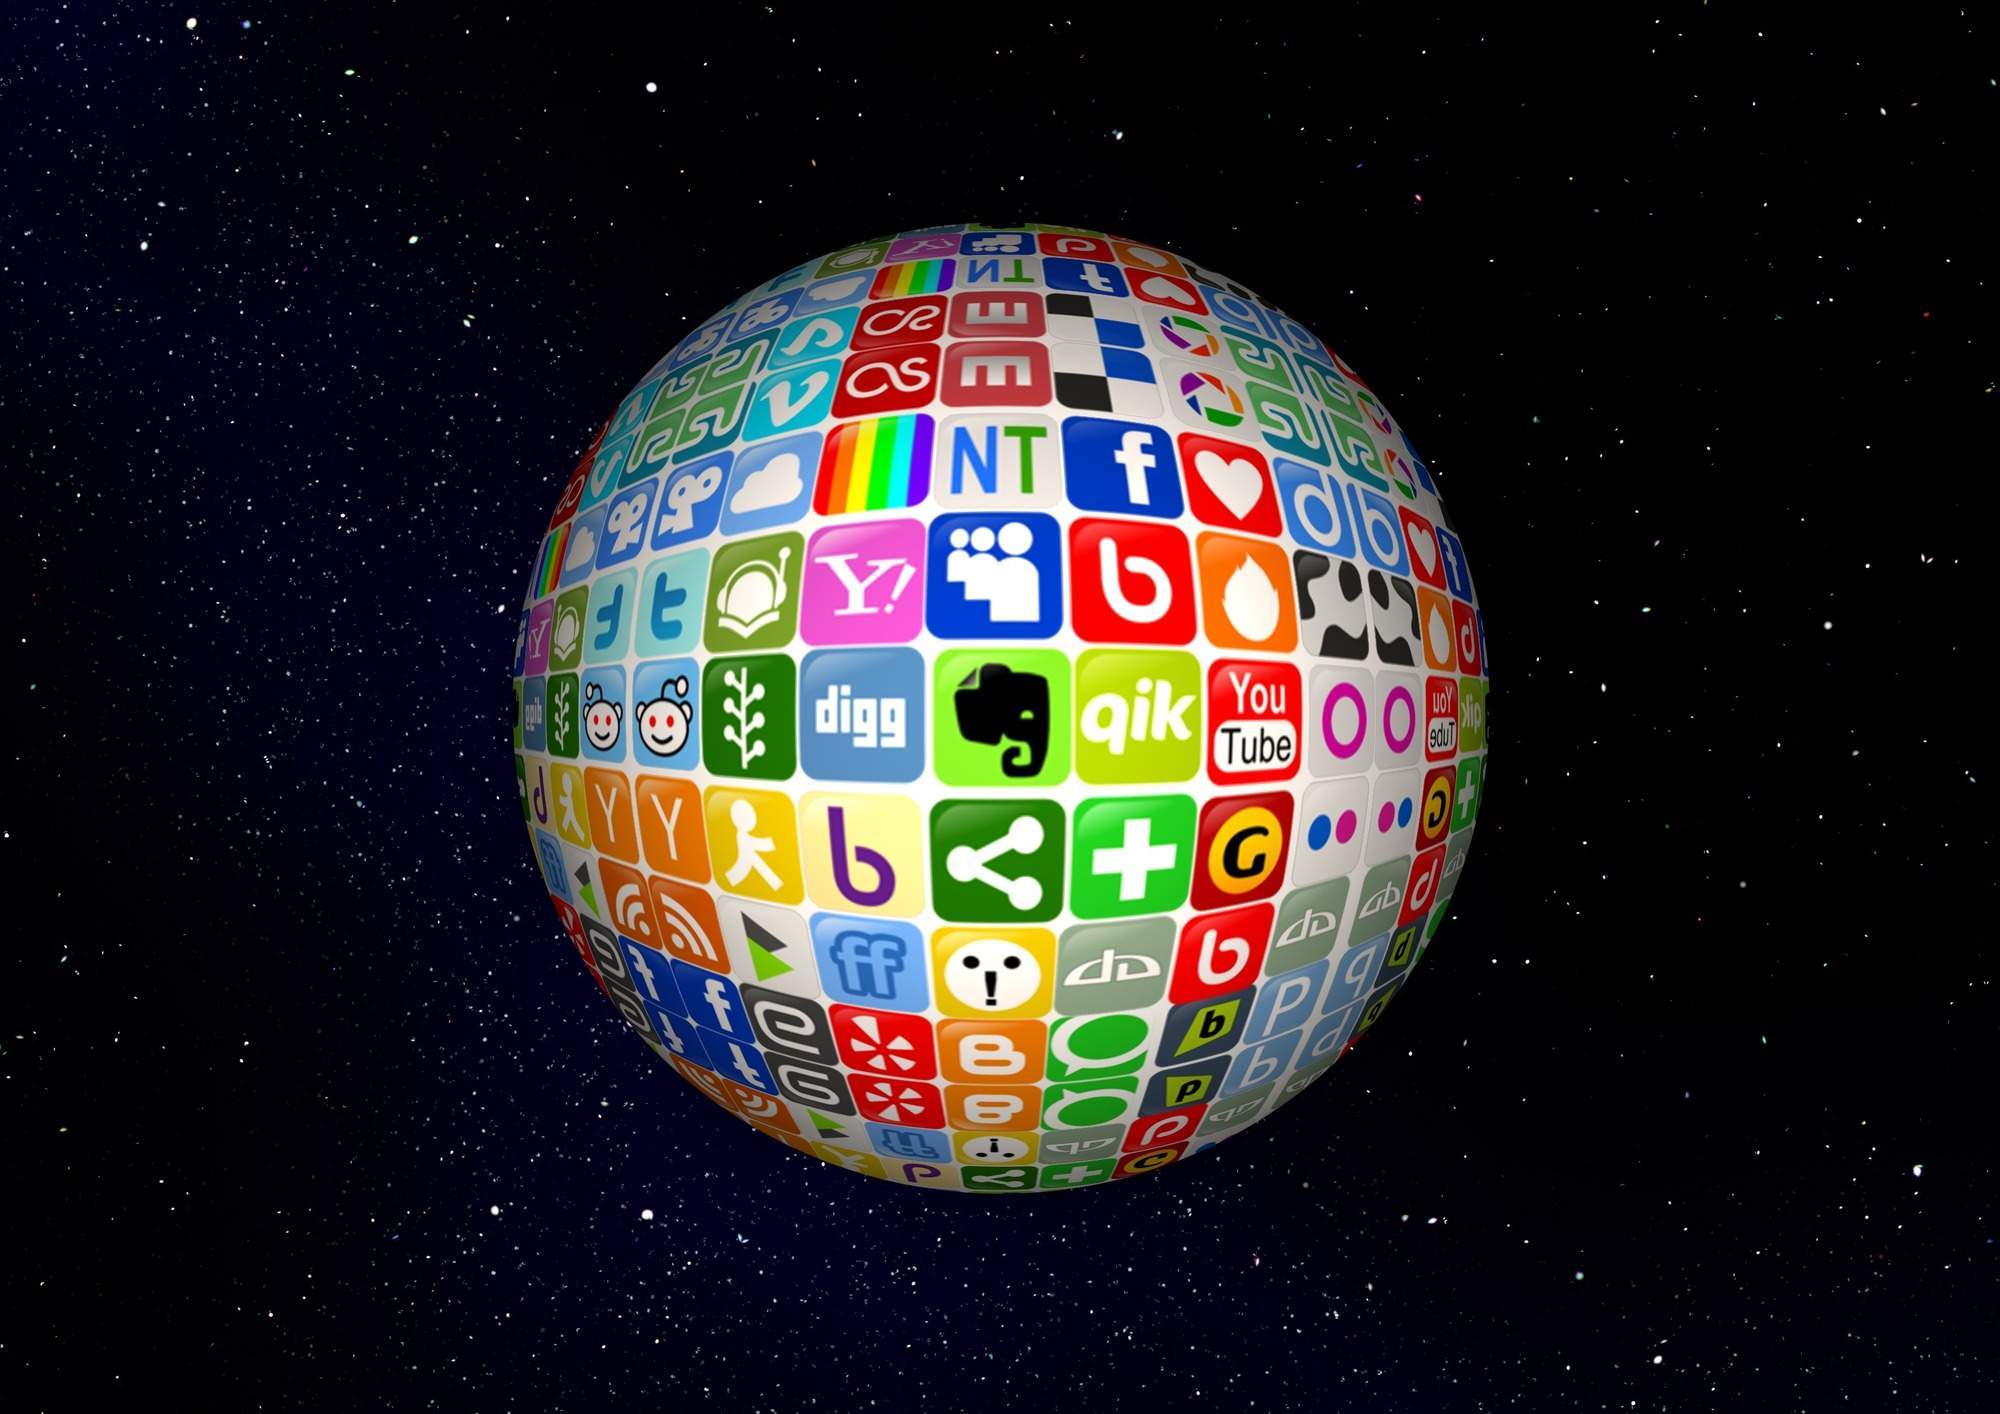 4 Most Popular Social Media Platforms of the 21st Century